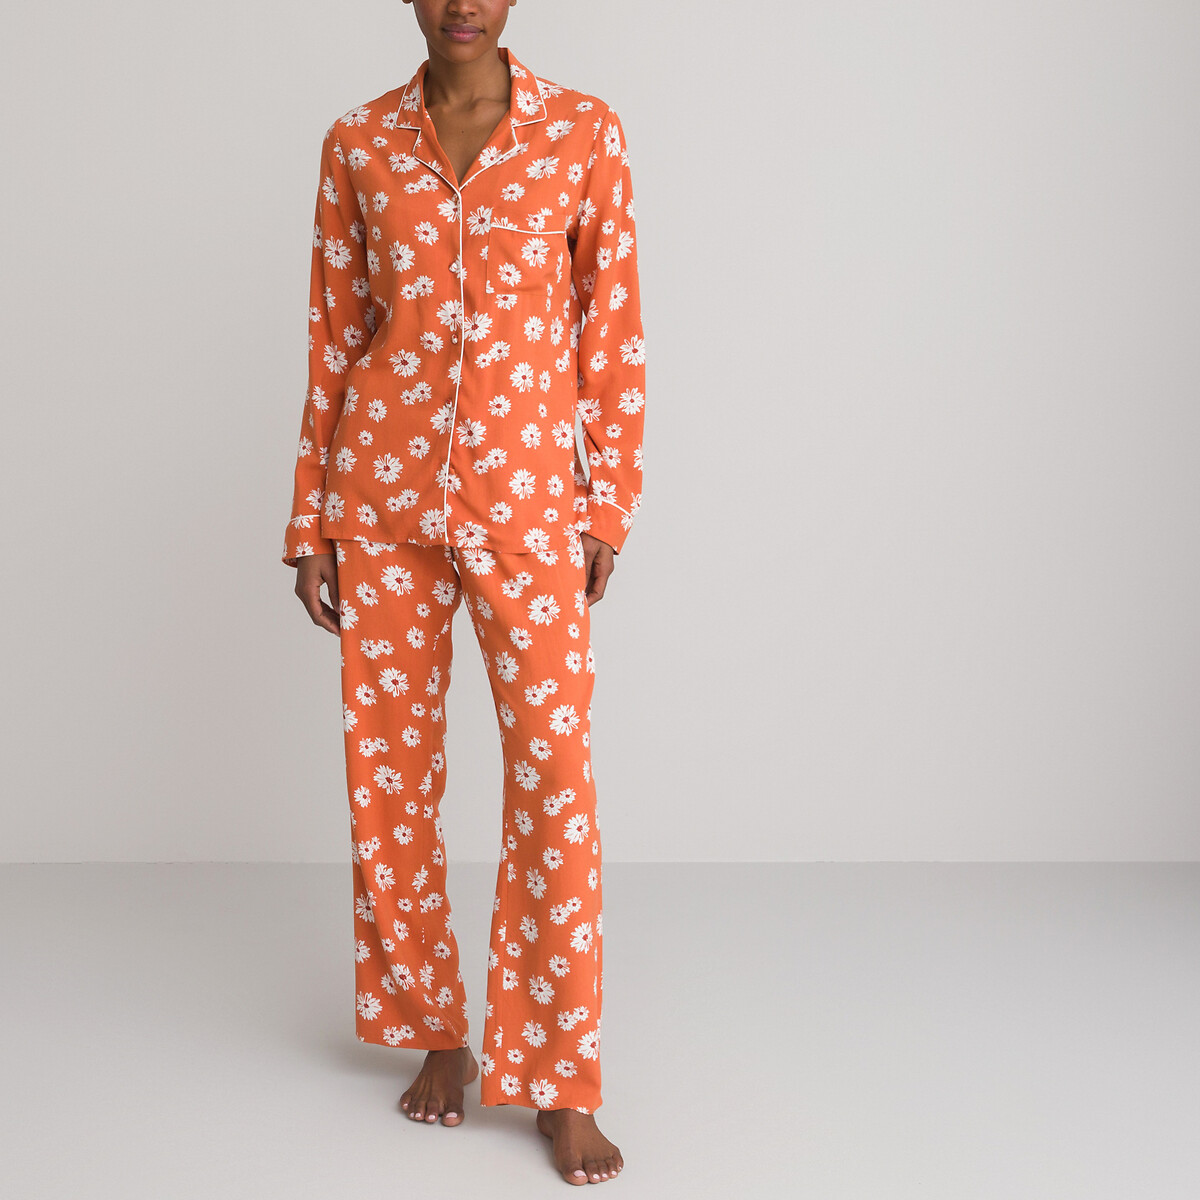 La Redoute Vêtements Sous-vêtements vêtements de nuit Pyjamas Pyjama besse 